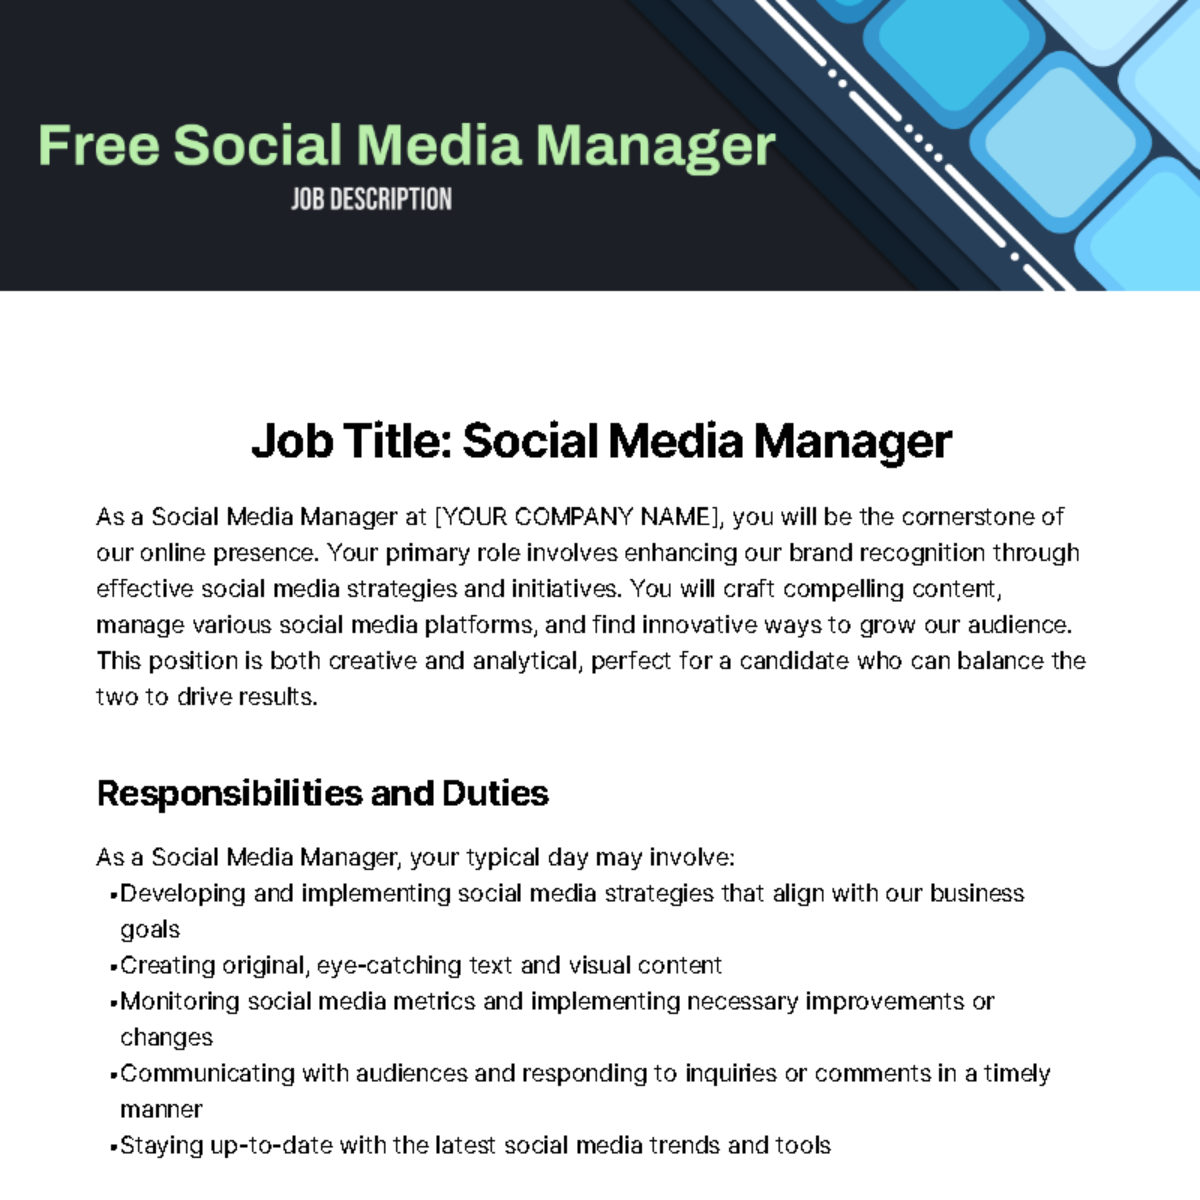 Social Media Manager Job Description Template